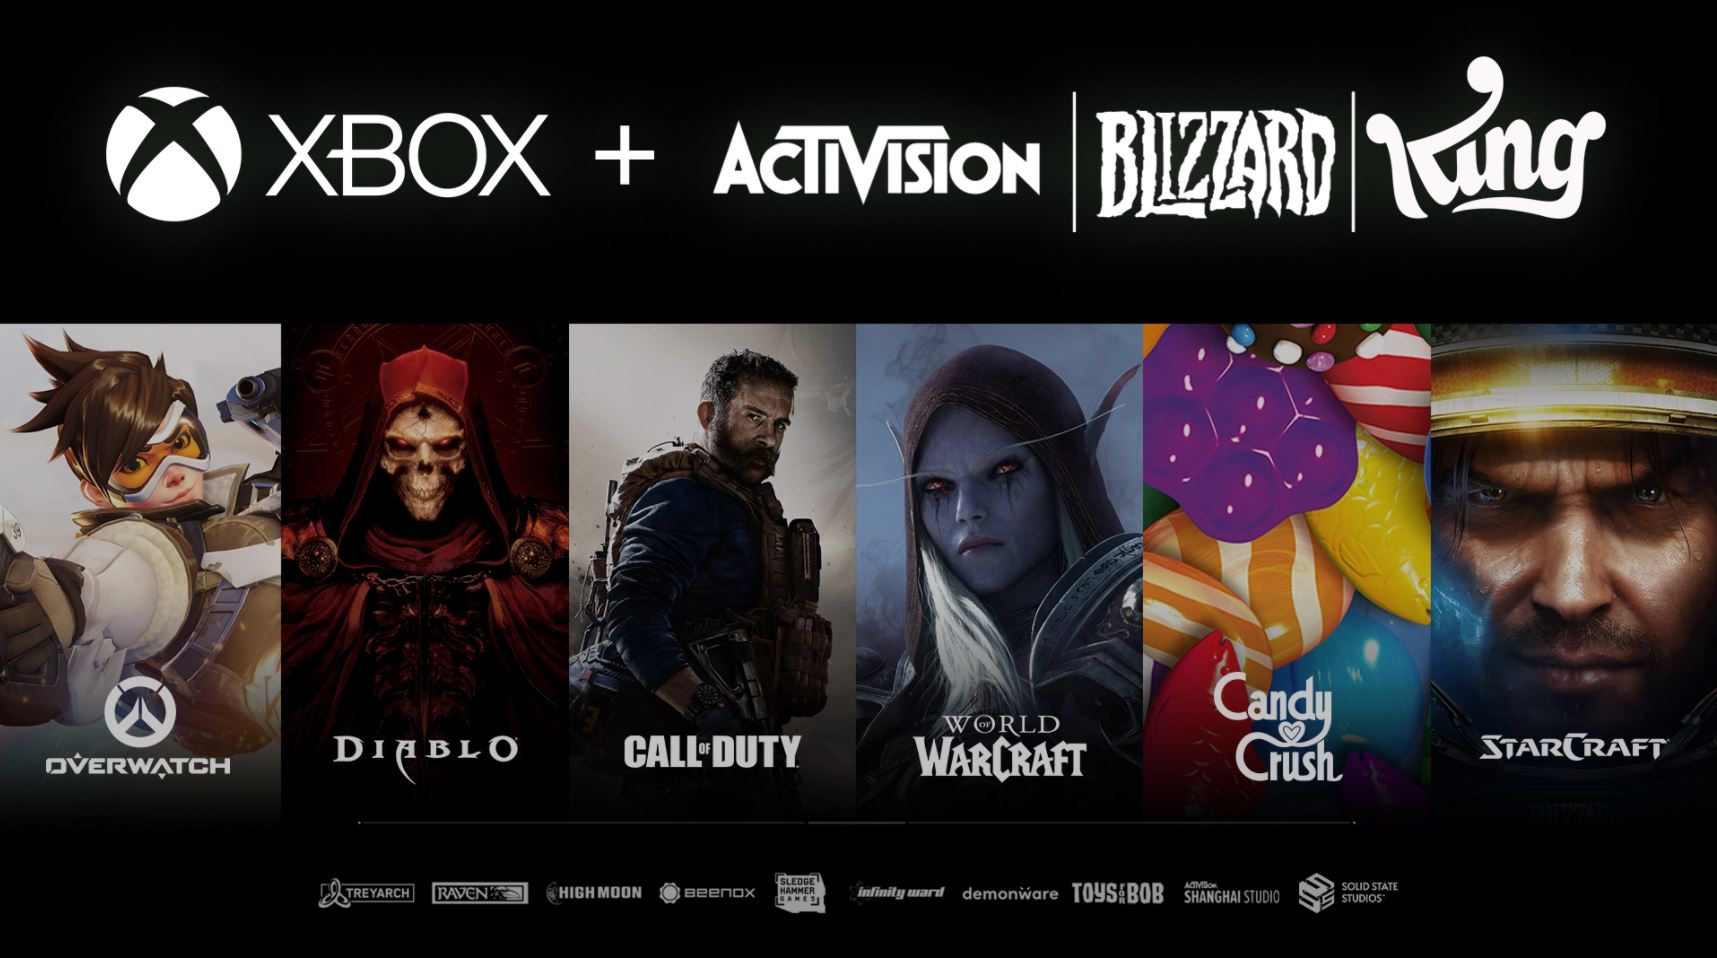 Xbox ने 18 जनवरी, 2022 को एक्टिविज़न ब्लिज़ार्ड का अधिग्रहण किया और कॉल ऑफ़ ड्यूटी, कैंडी क्रश और बहुत कुछ के अधिकार प्राप्त किए।